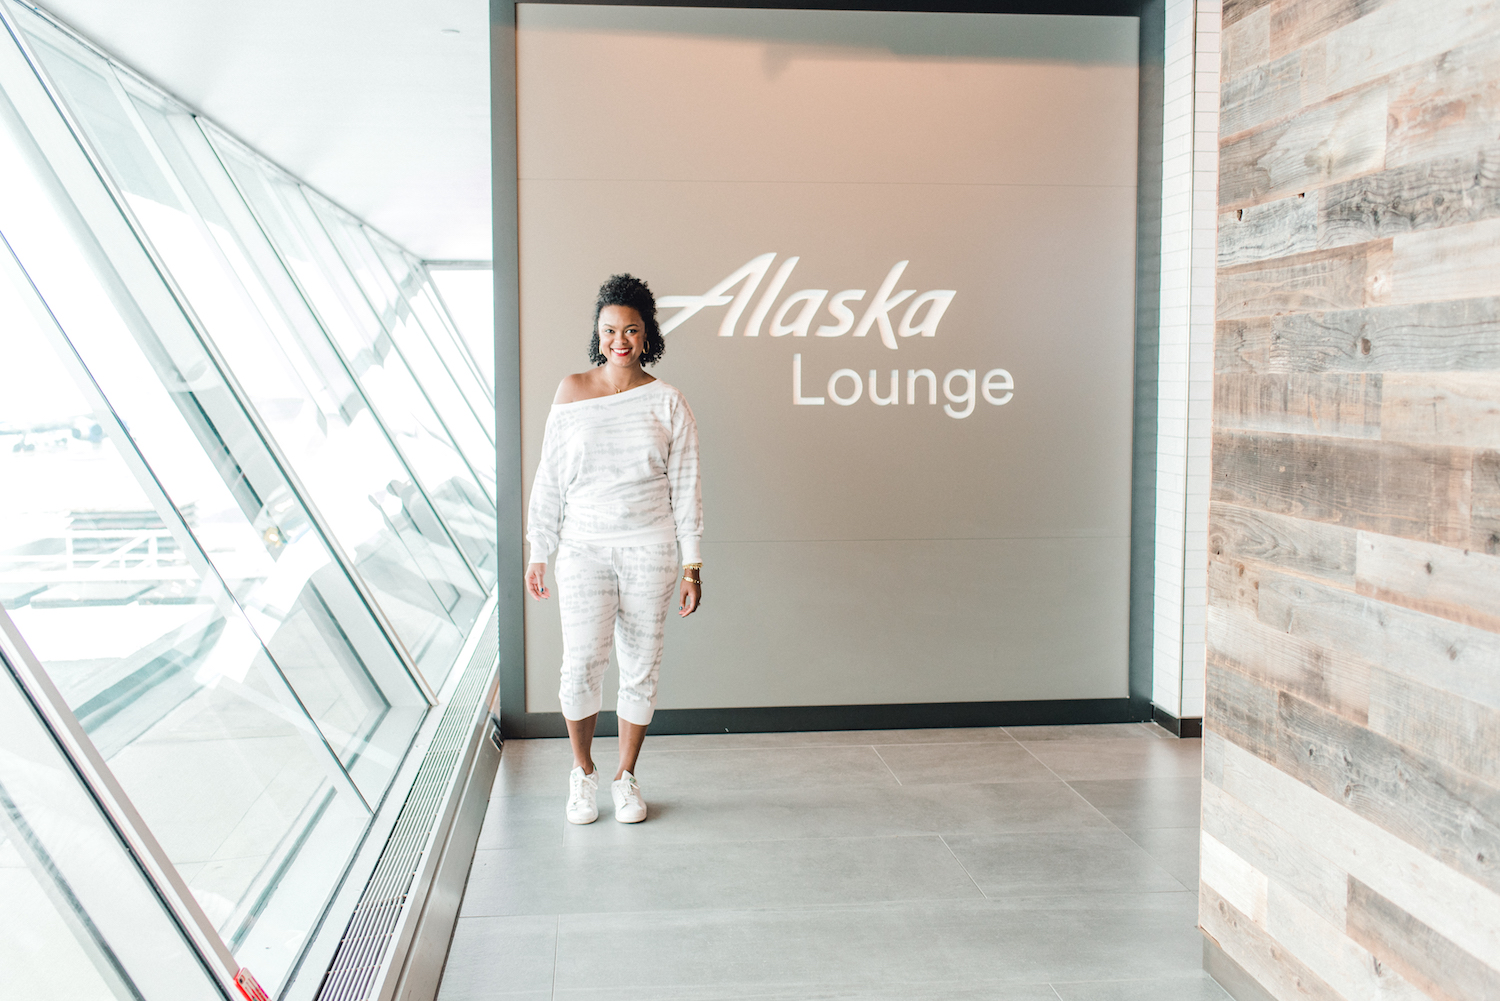 Alaska-Lounge-JFK-Airport Exterior Sign